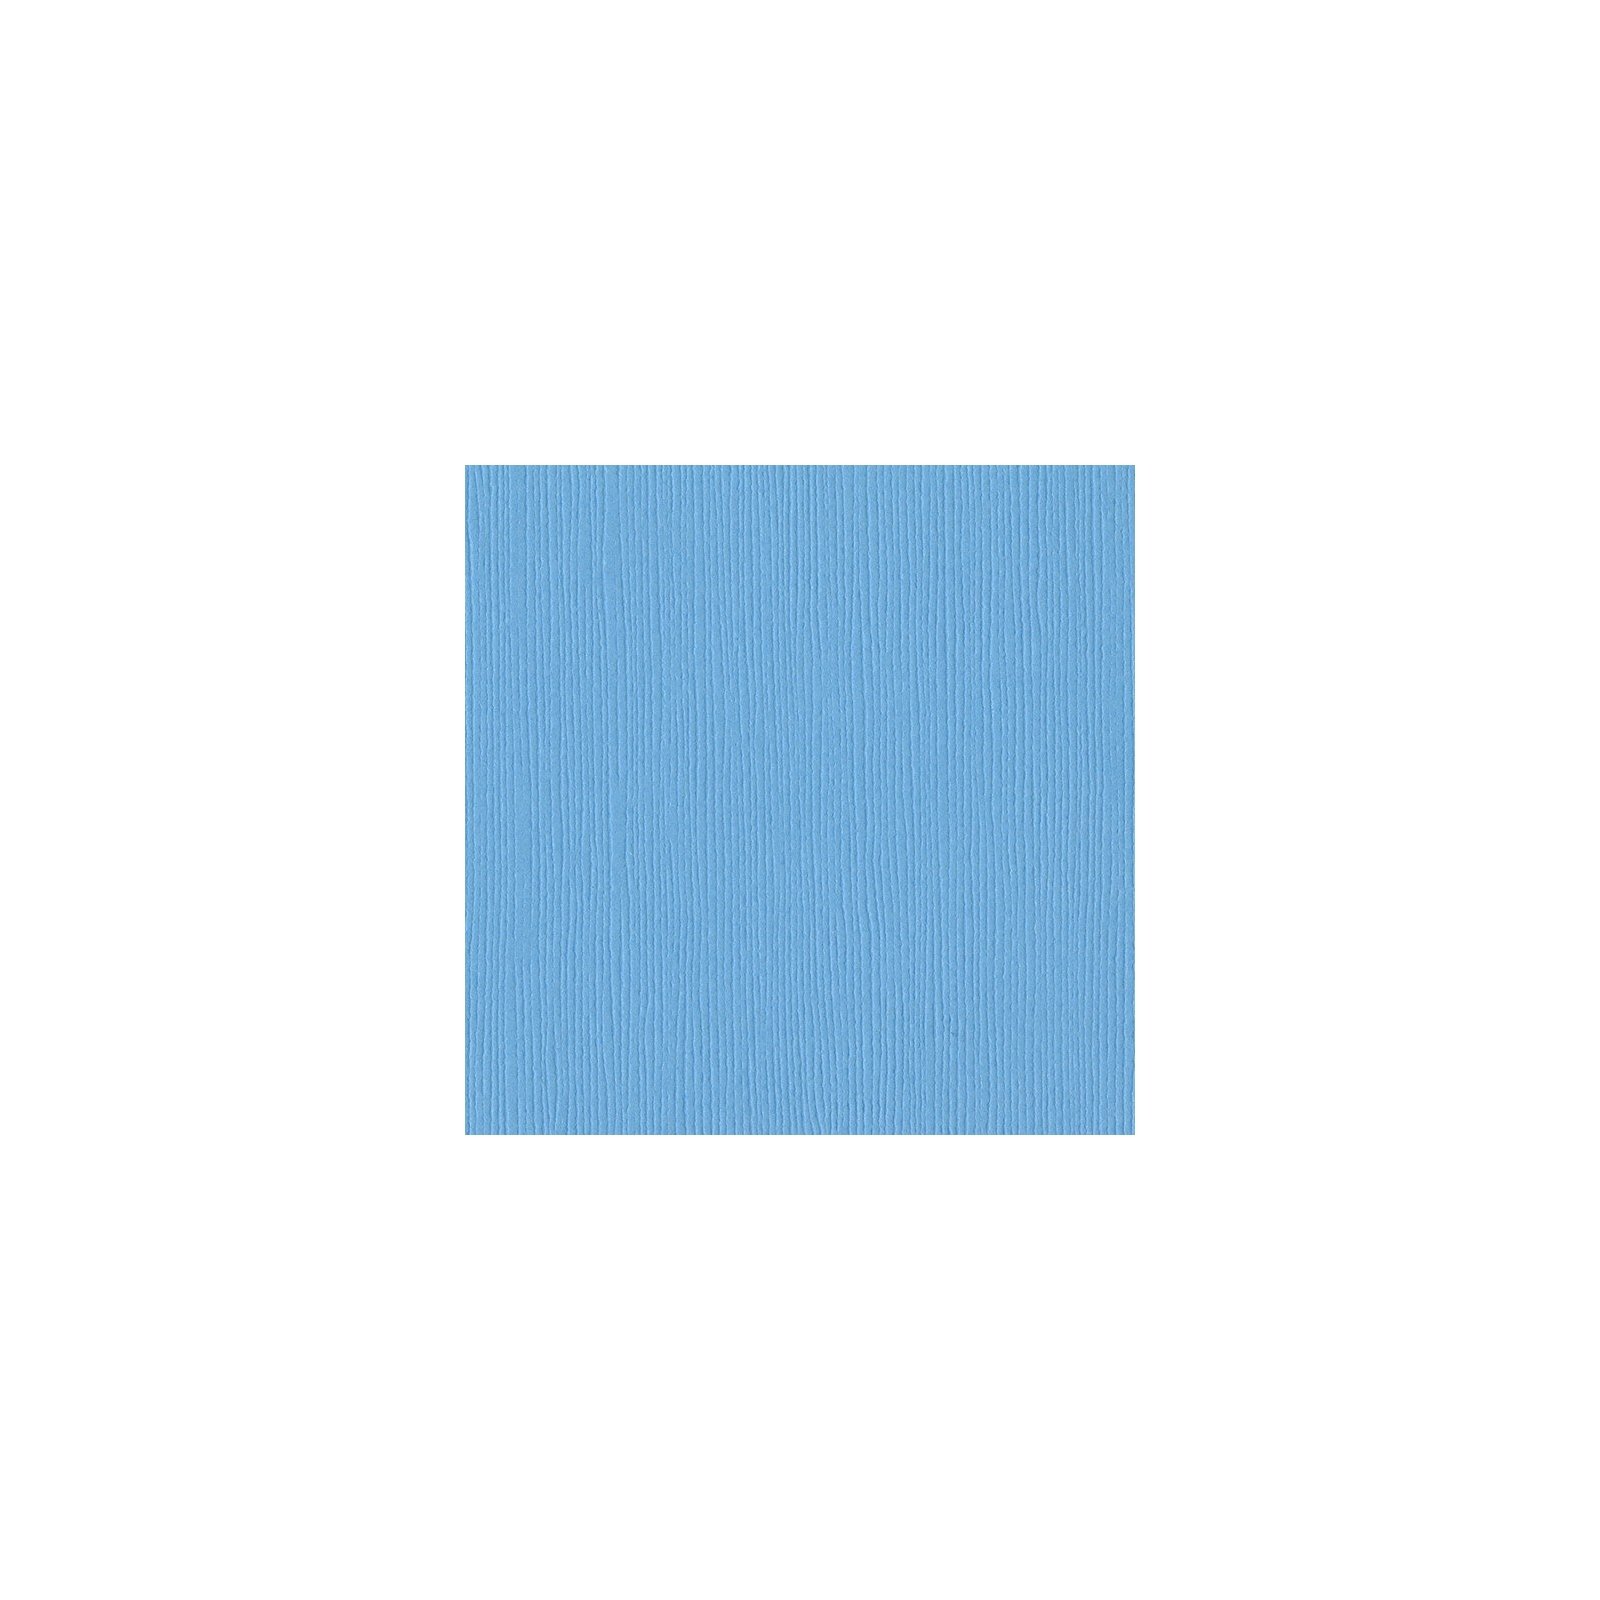 Papier bleu ciel - Vibrant blue - Bleu vibrant - Fourz - Bazzill Basics Paper